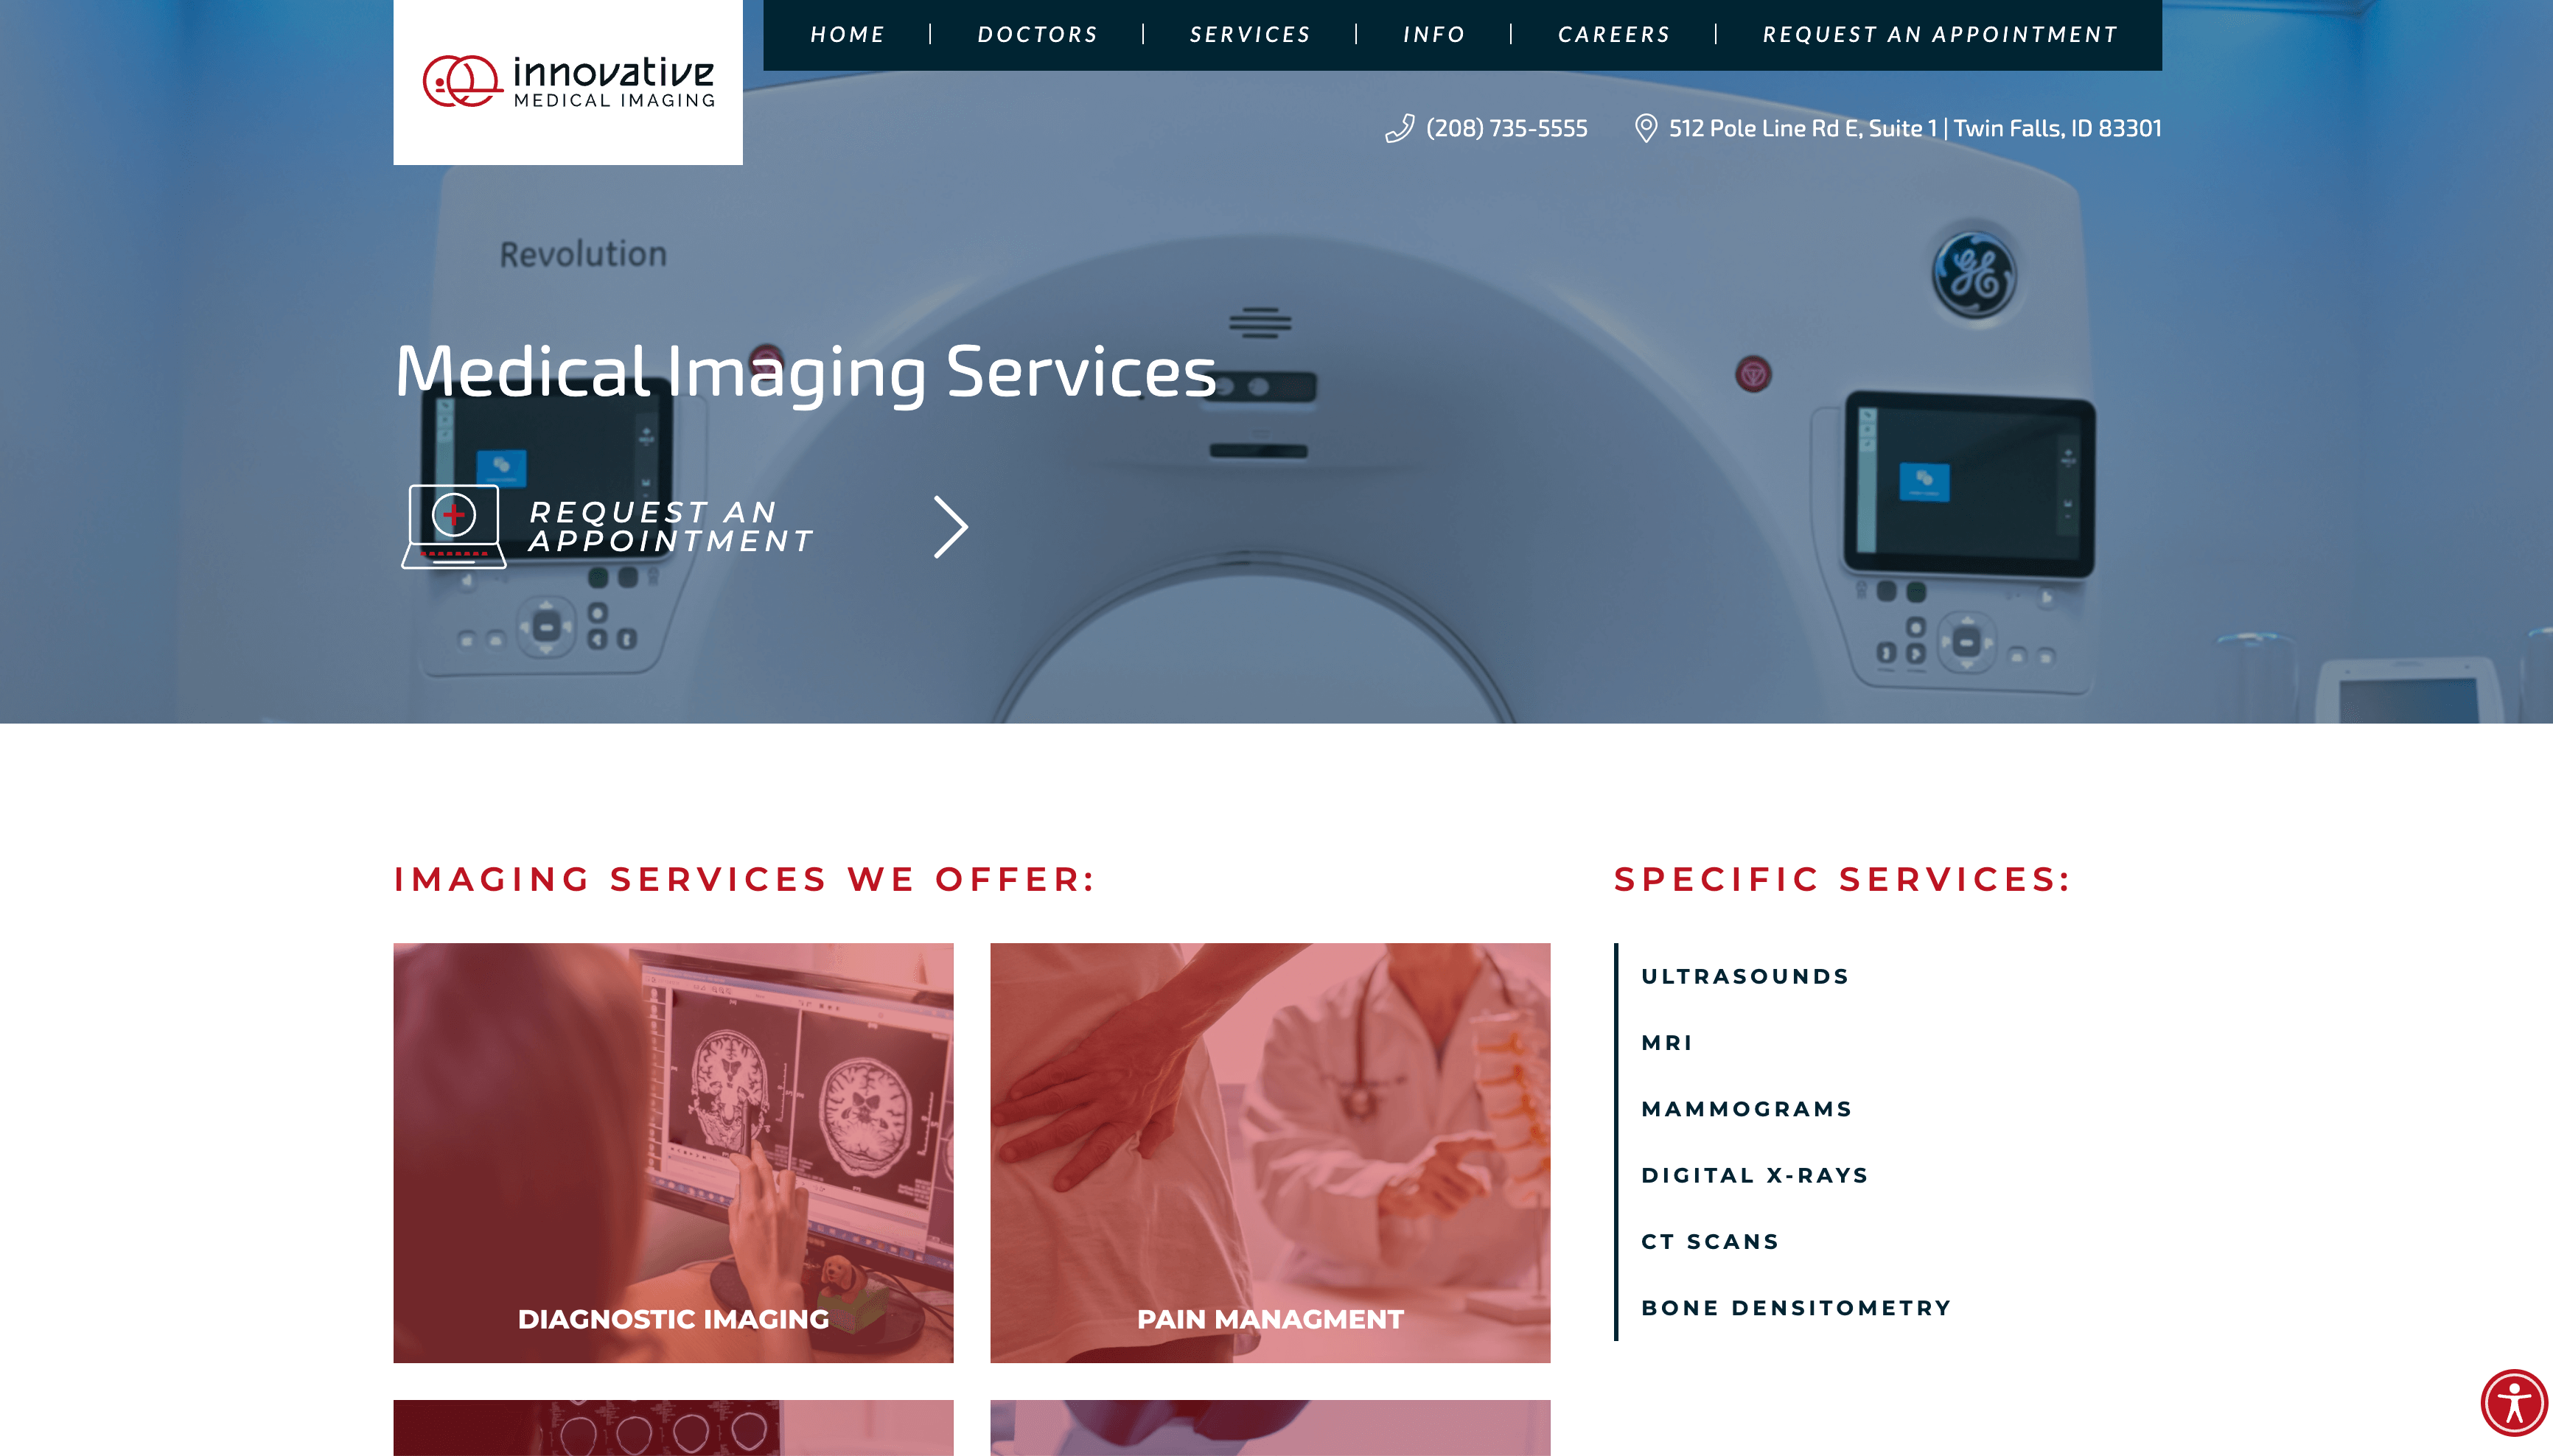 Innovative medical imaging website design